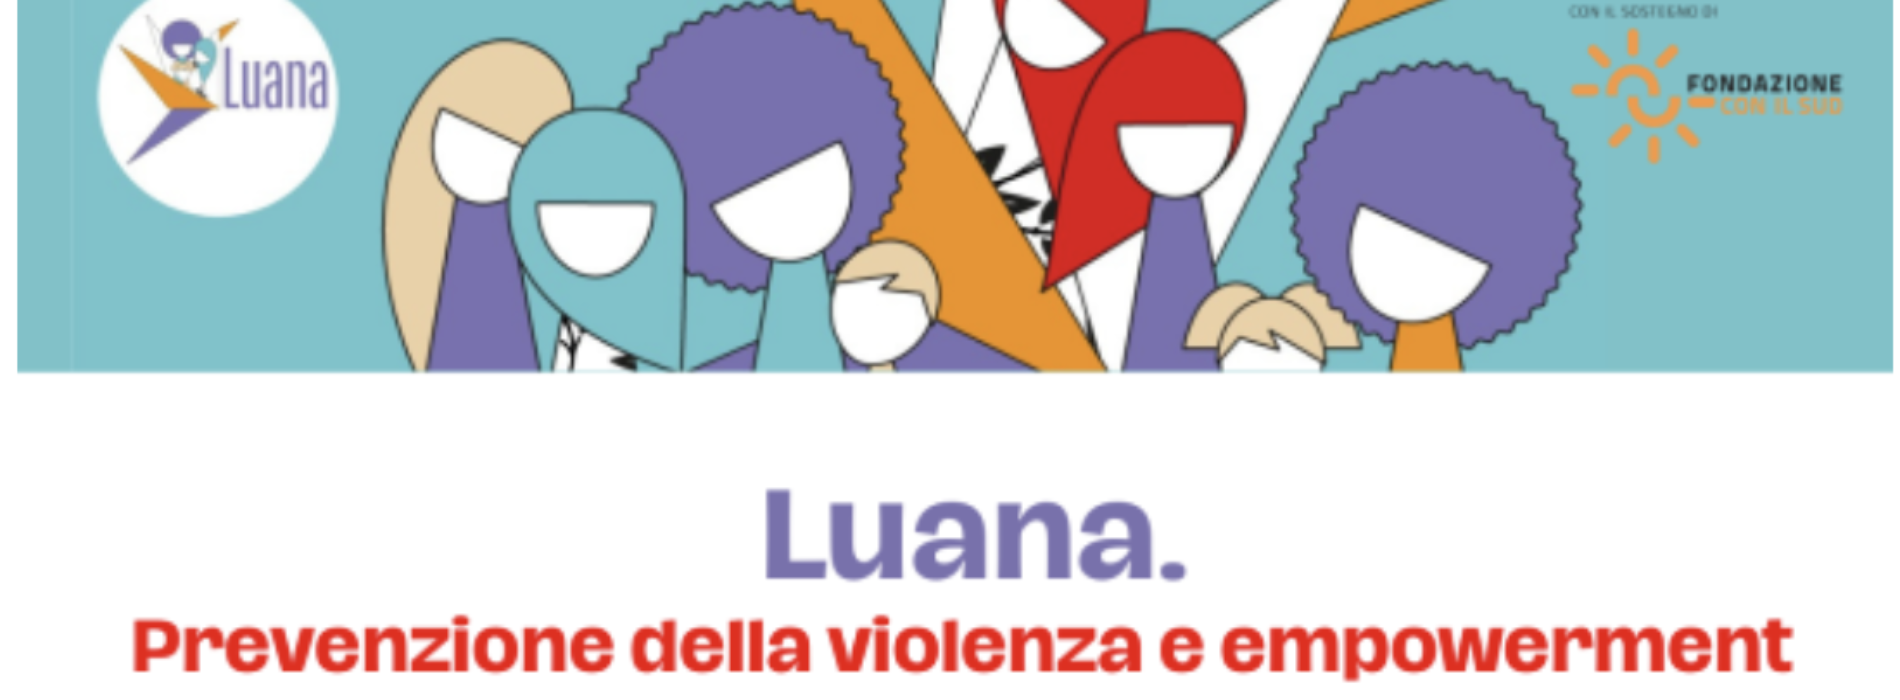 Prevenzione della violenza, si presenta il progetto Luana